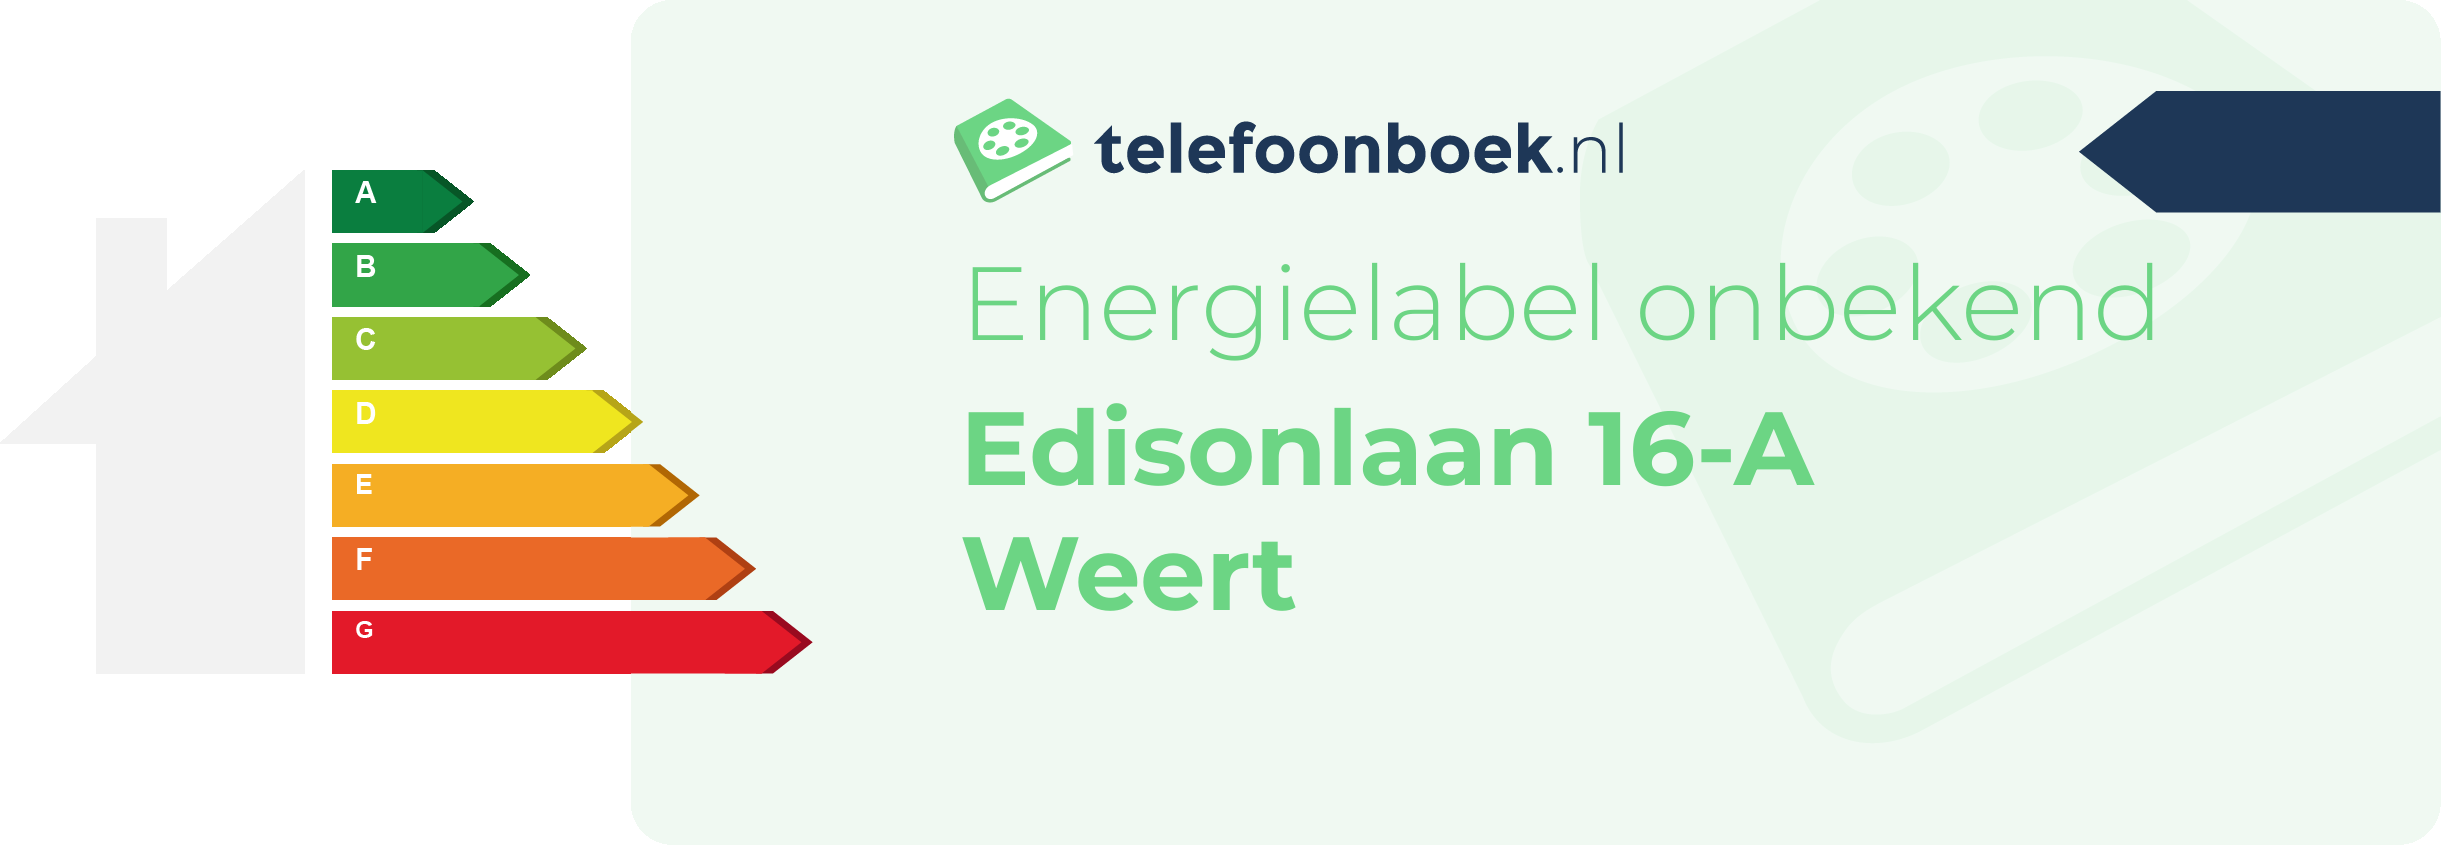 Energielabel Edisonlaan 16-A Weert